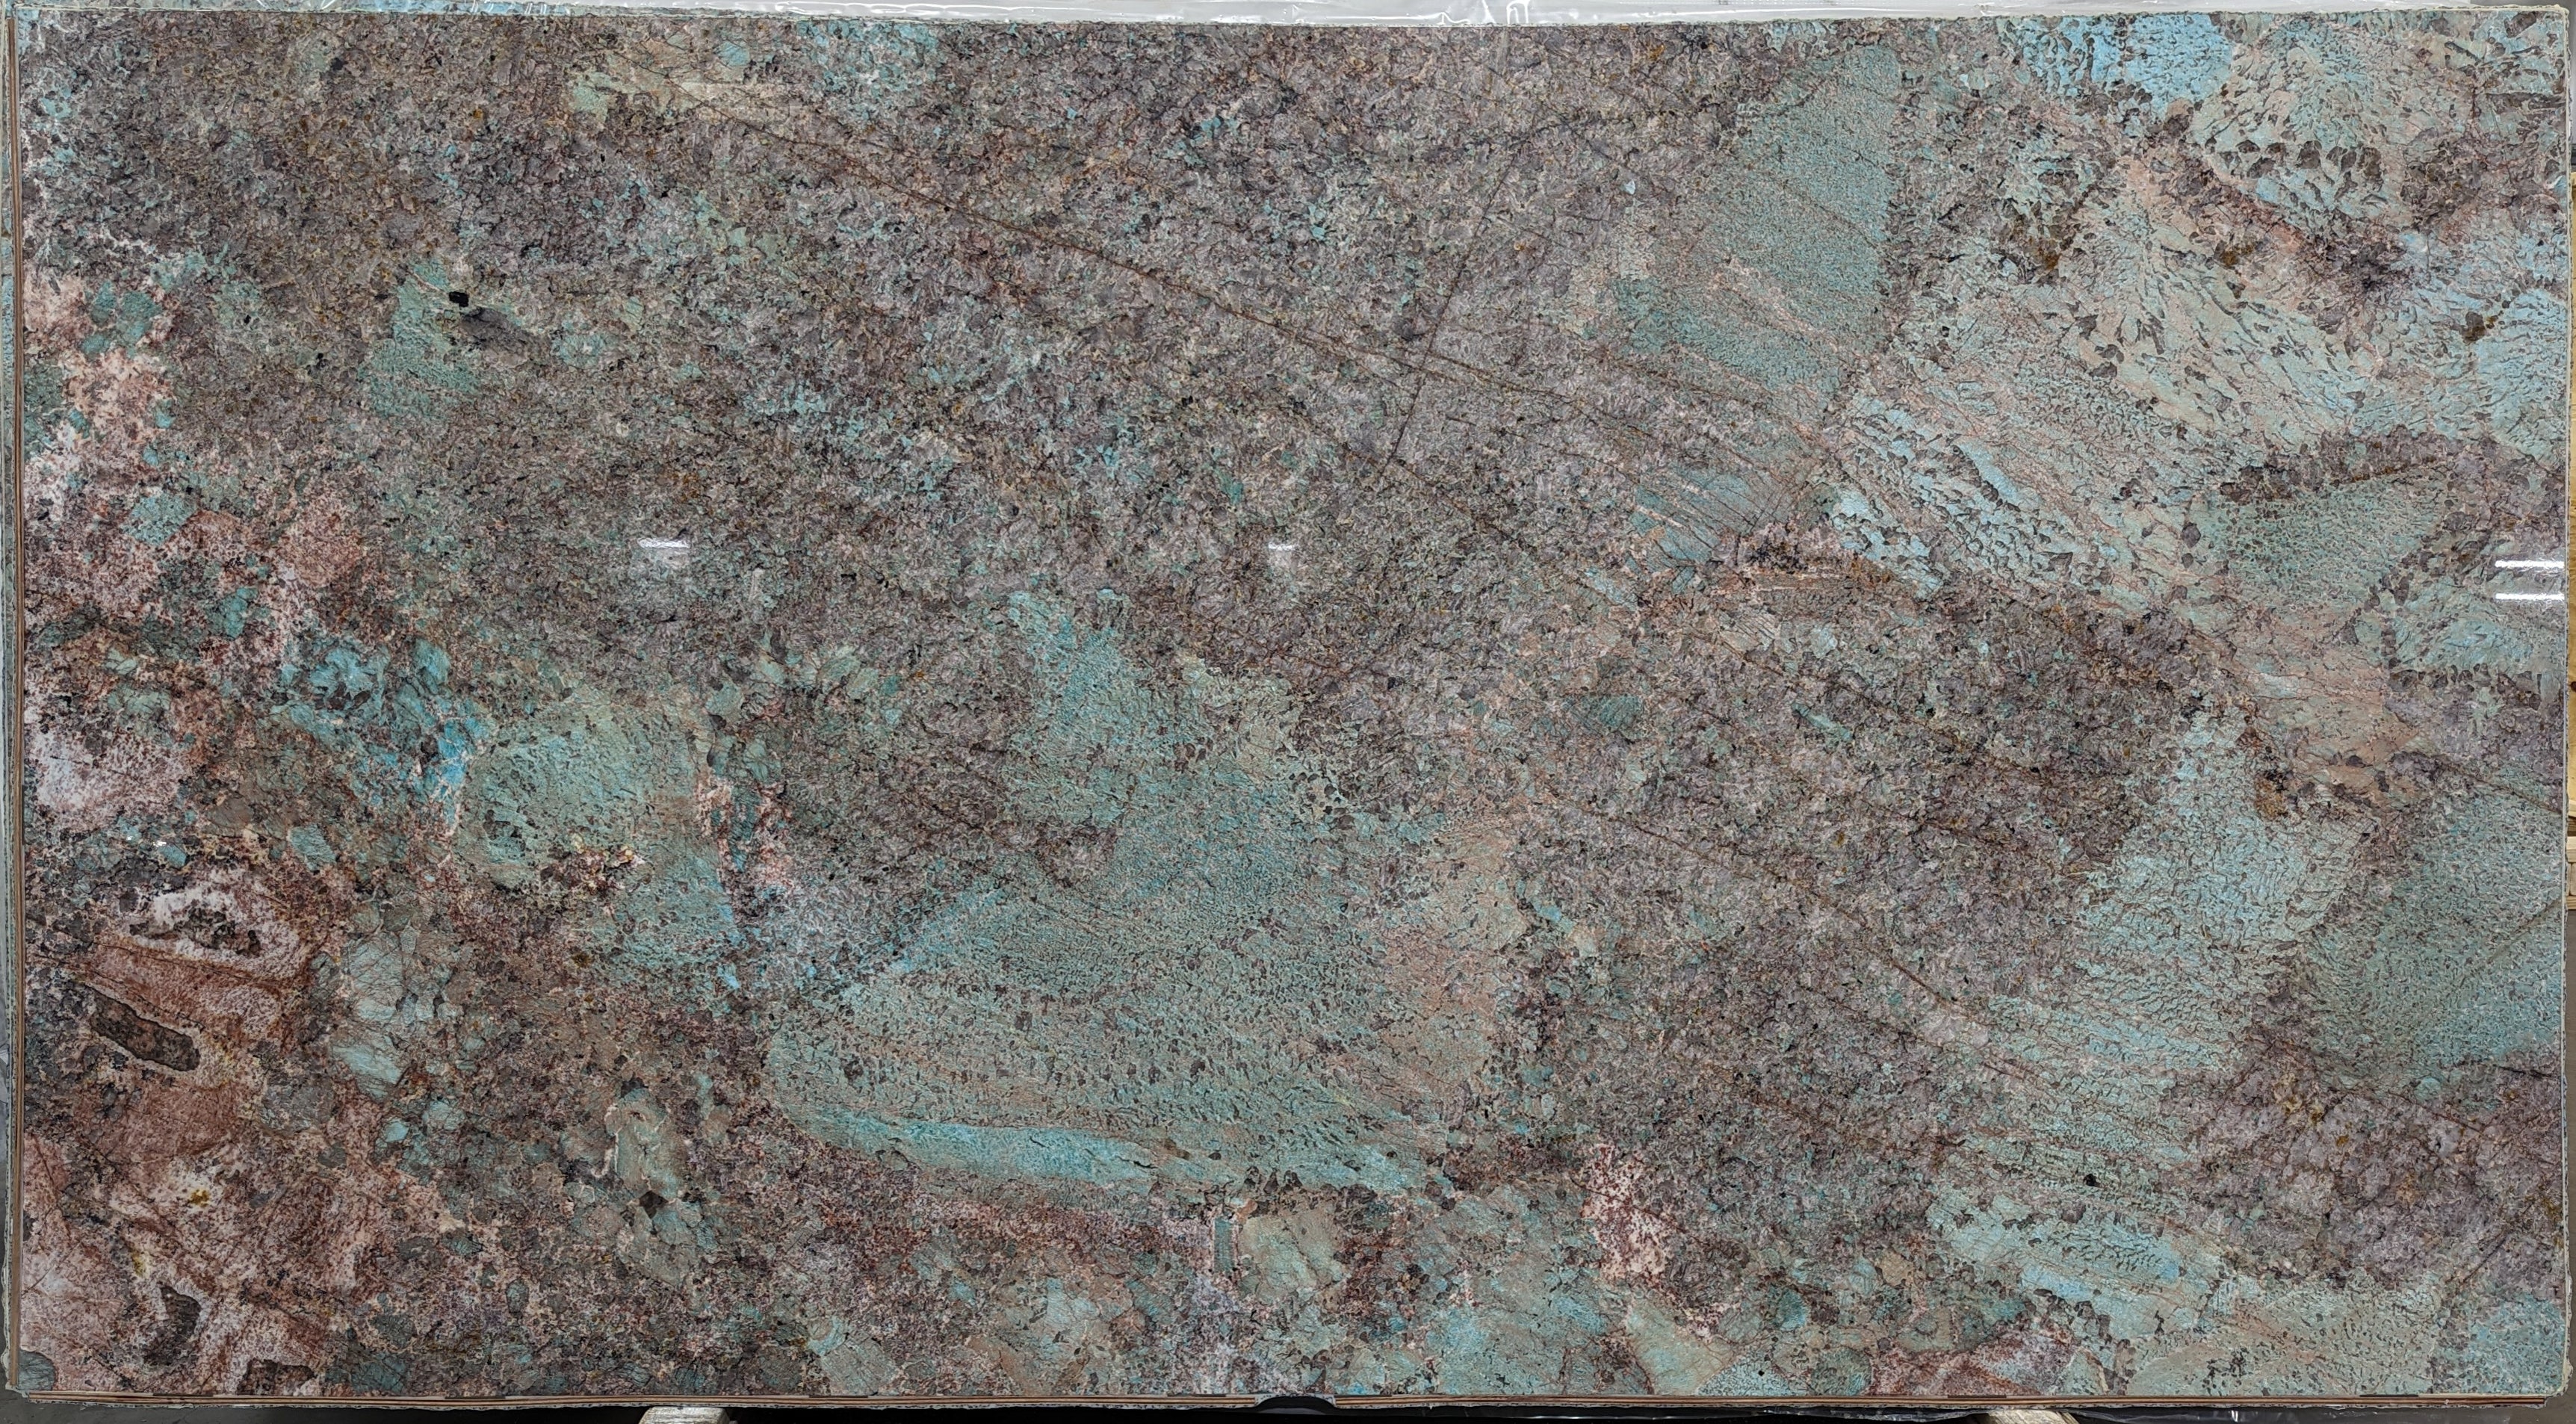  Amazonite Quartzite Slab 3/4  Polished Stone - 20921#31 -  64X119 